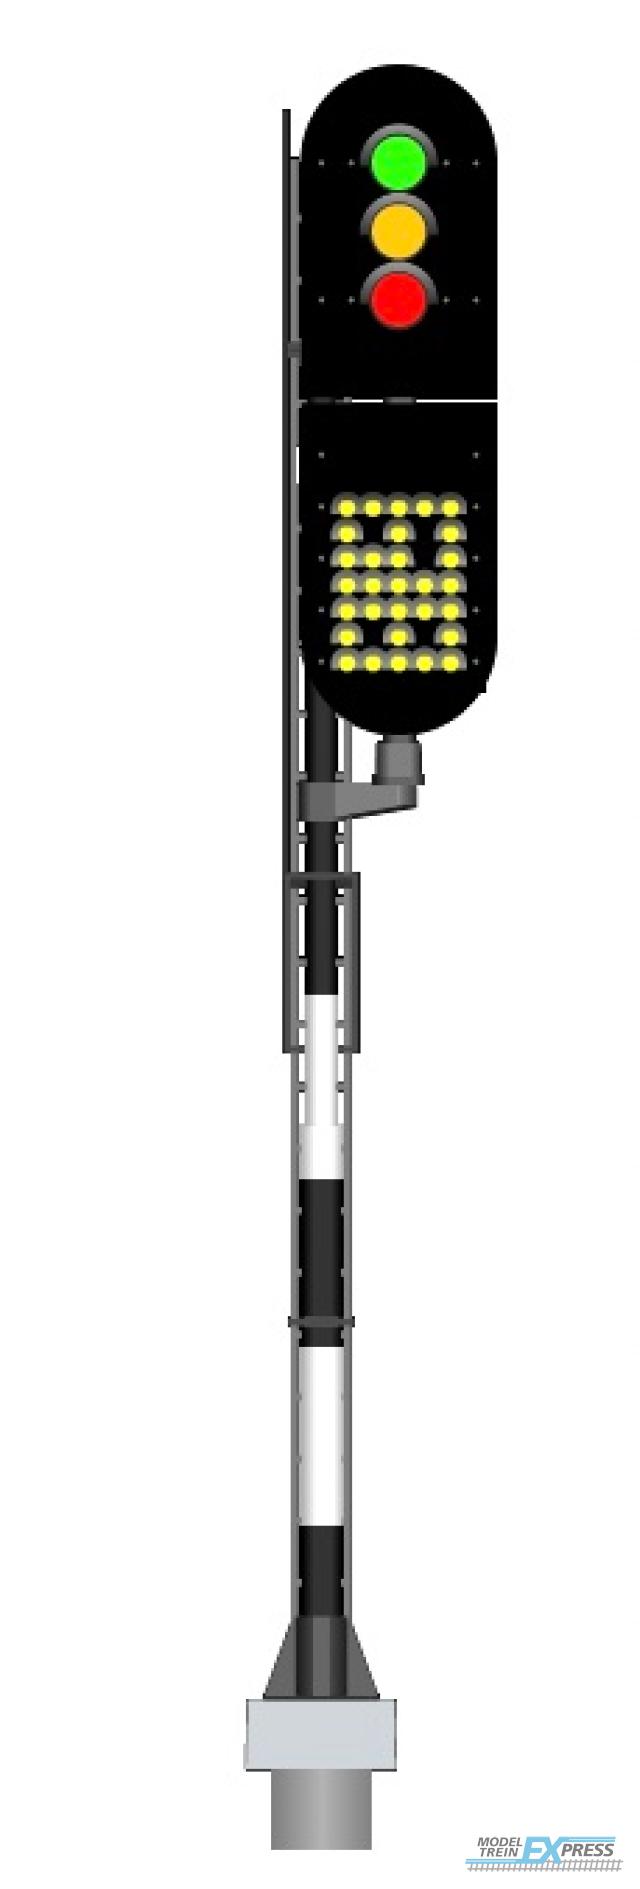 Mafen 913710 NS - Hauptsignal mit 3 LEDs mit Geschwindigkeitsanzeiger (Grün/Gelb/Rot) - rechts